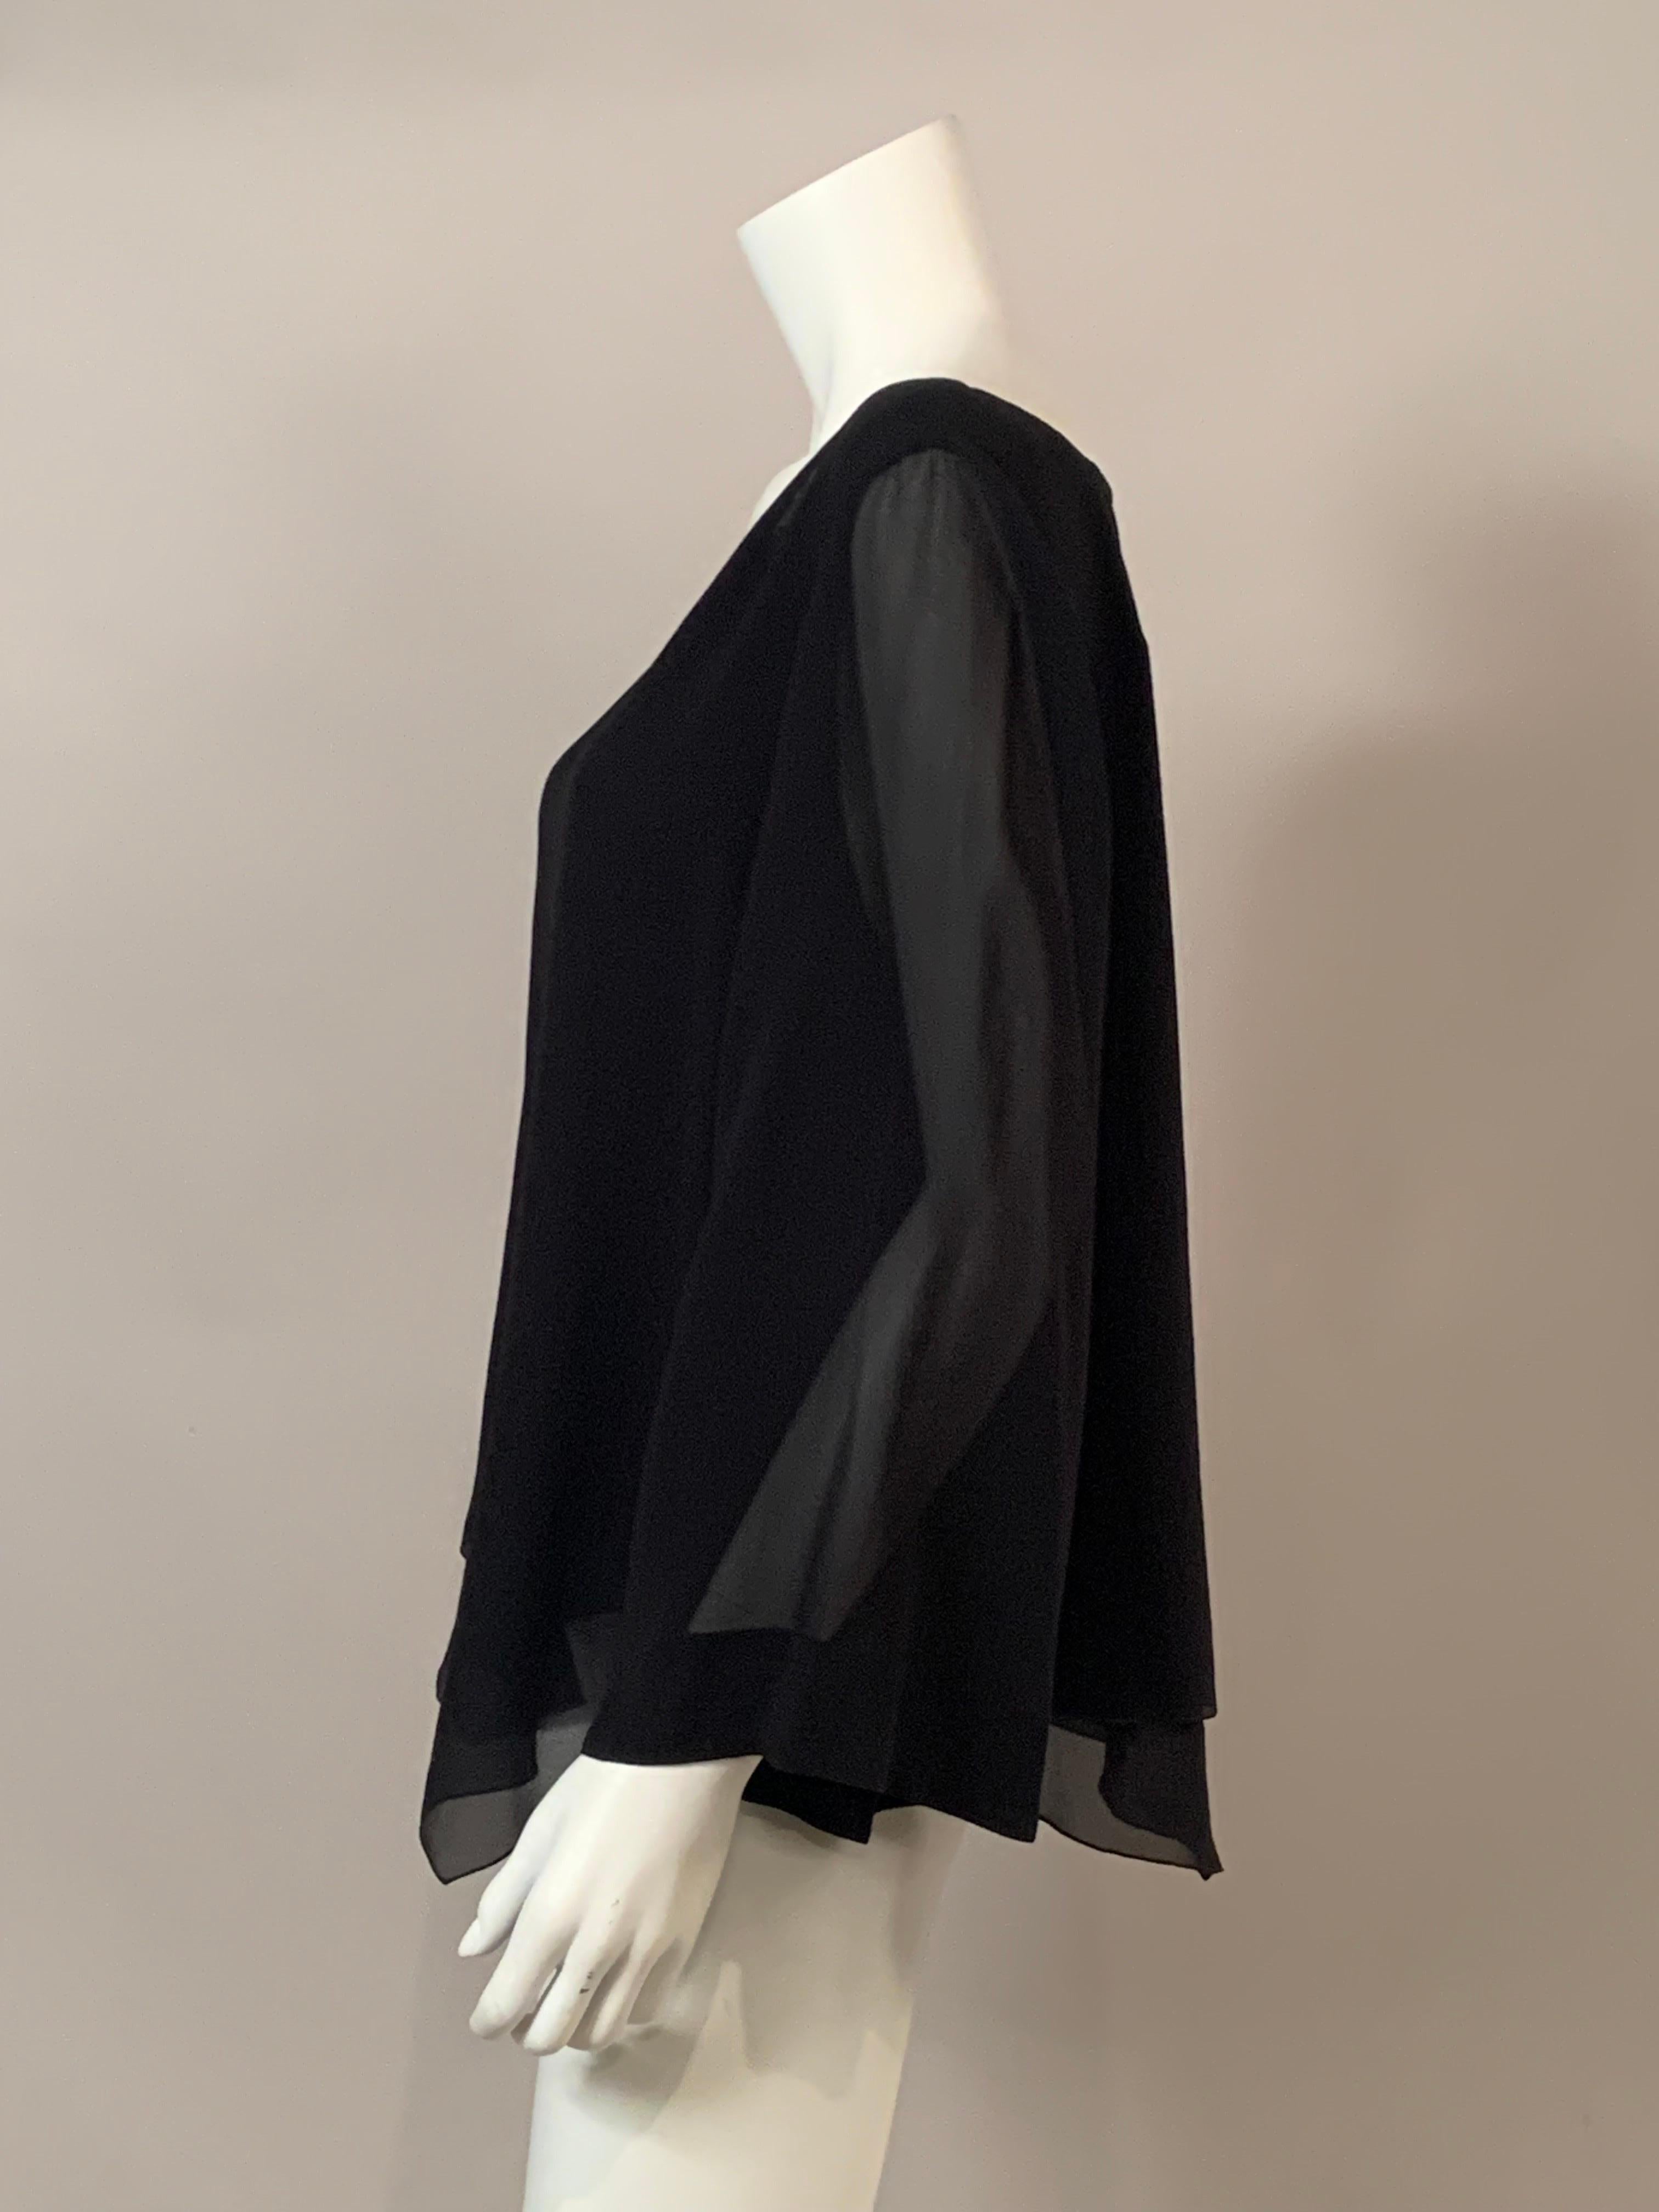 Armani Collezioni Black Silk Chiffon Tunic Top   In Excellent Condition For Sale In New Hope, PA